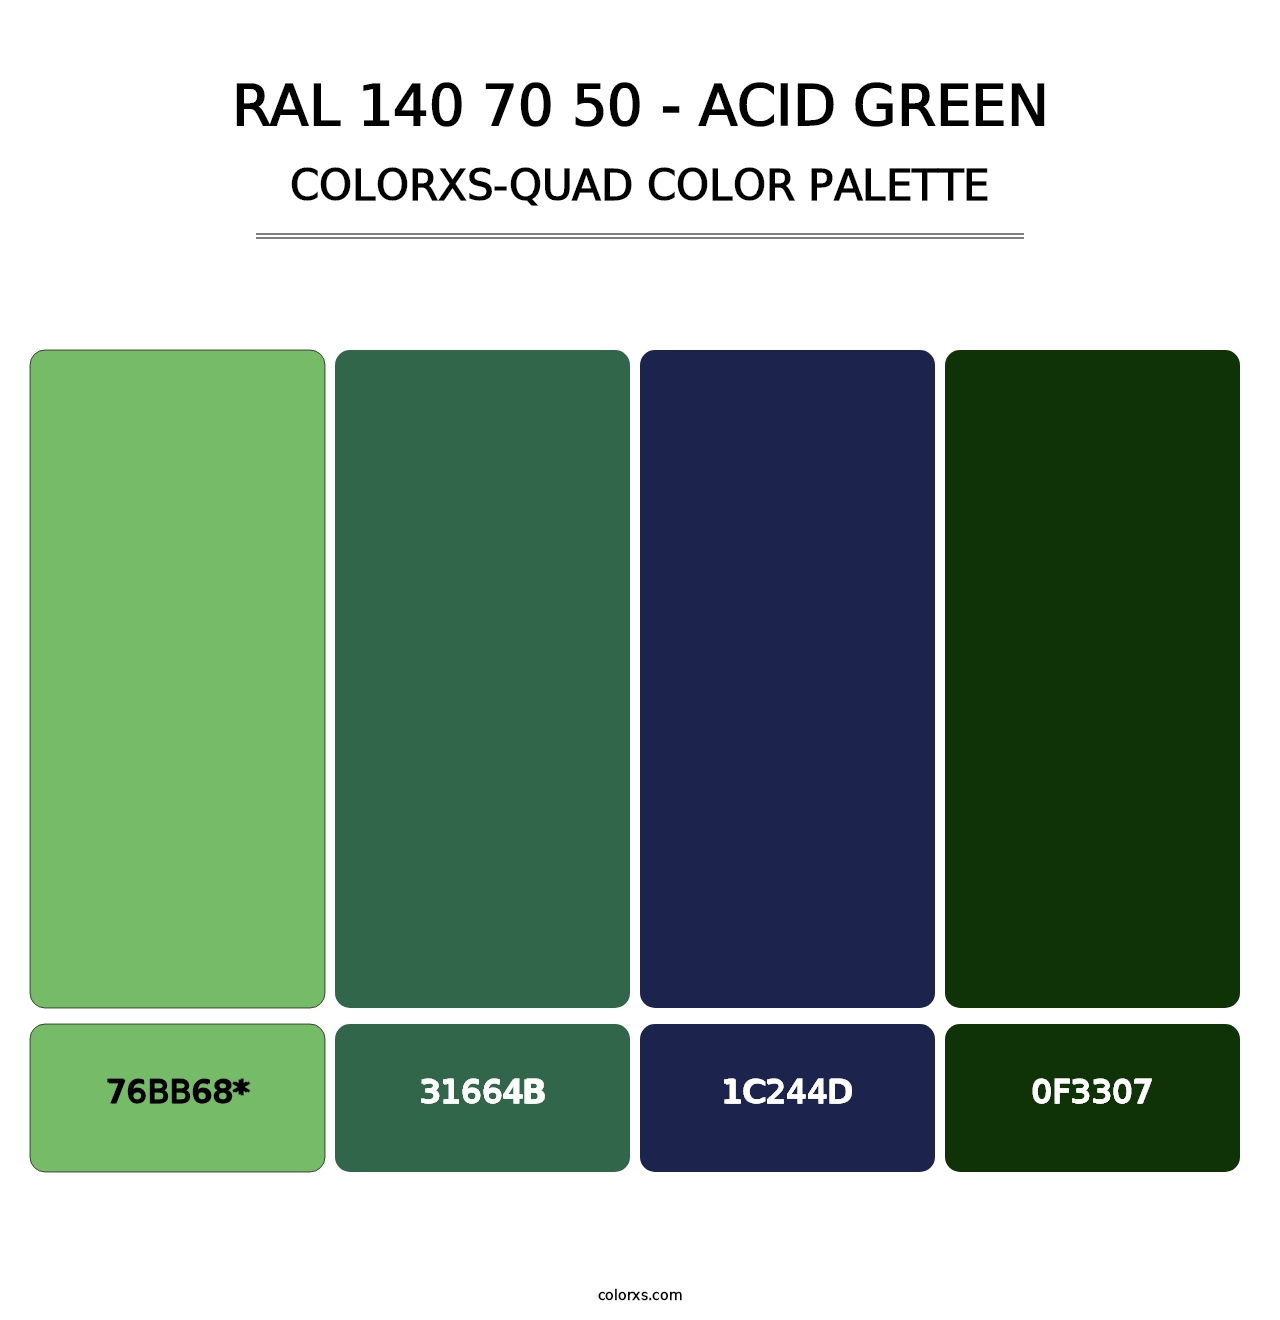 RAL 140 70 50 - Acid Green - Colorxs Quad Palette